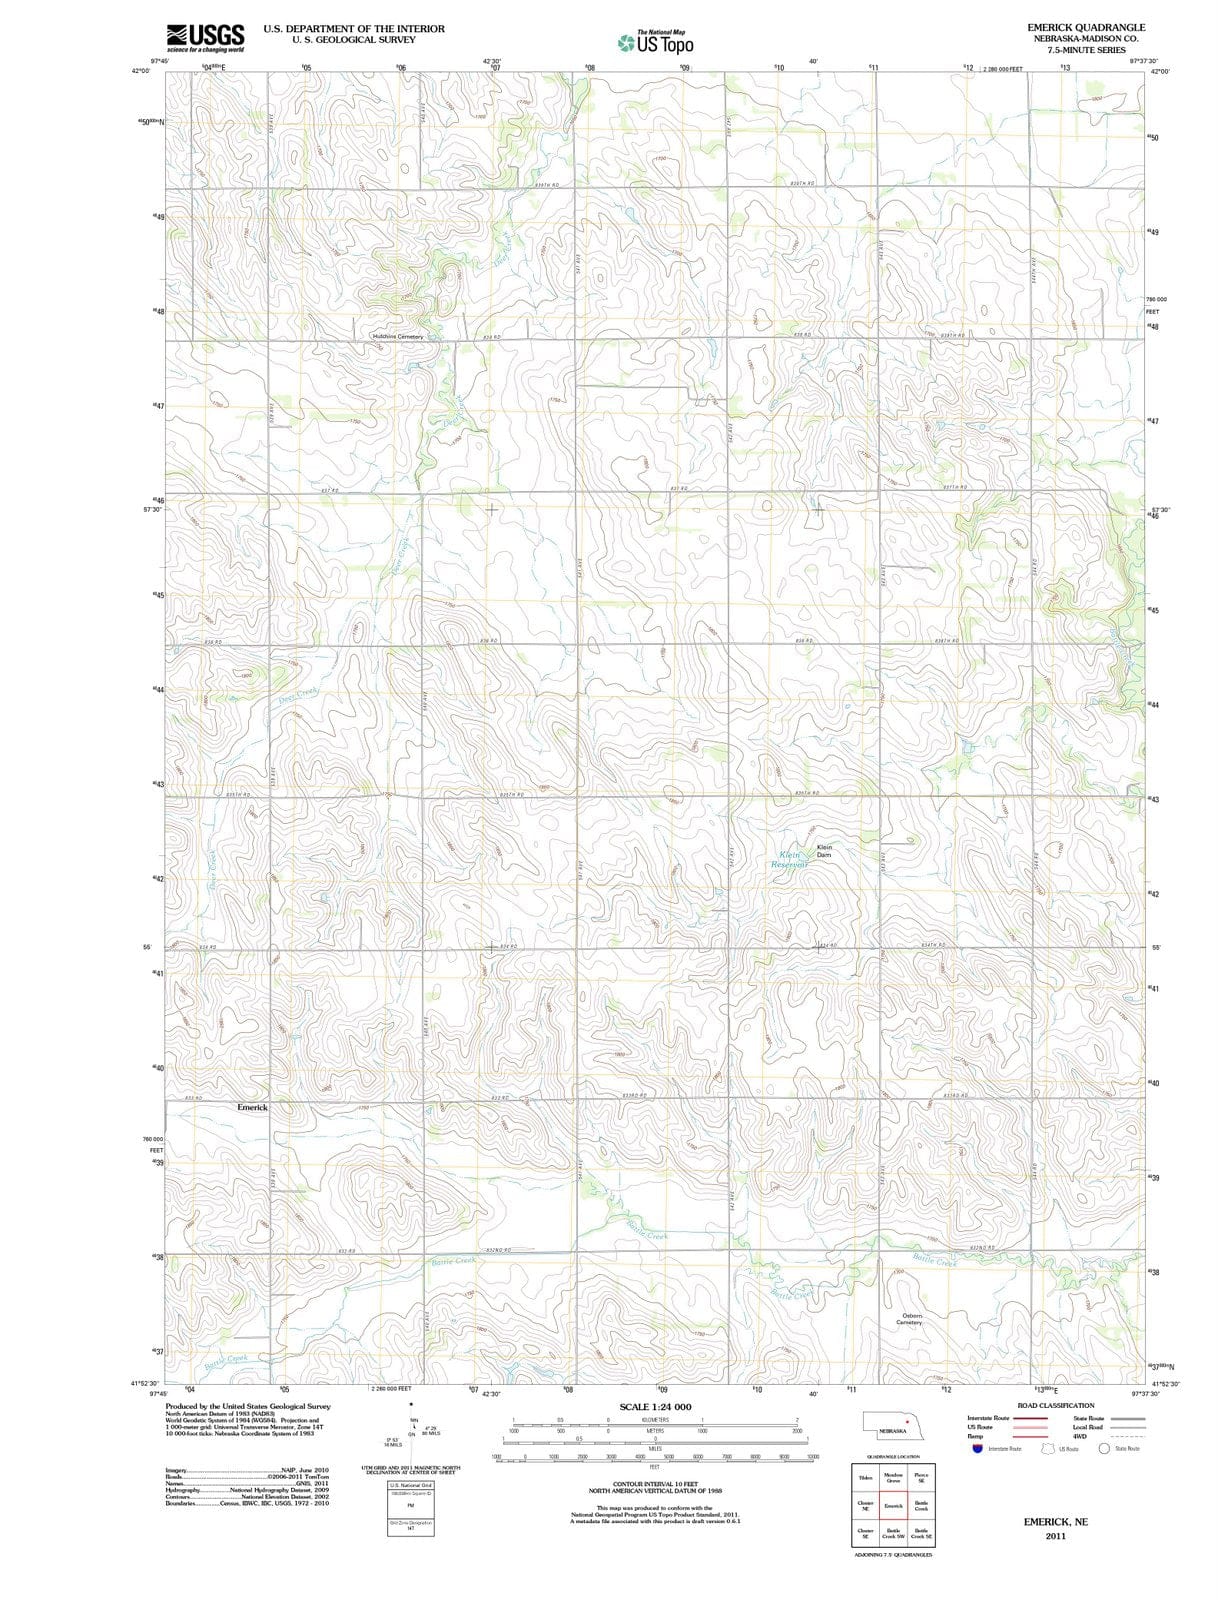 2011 Emerick, NE - Nebraska - USGS Topographic Map